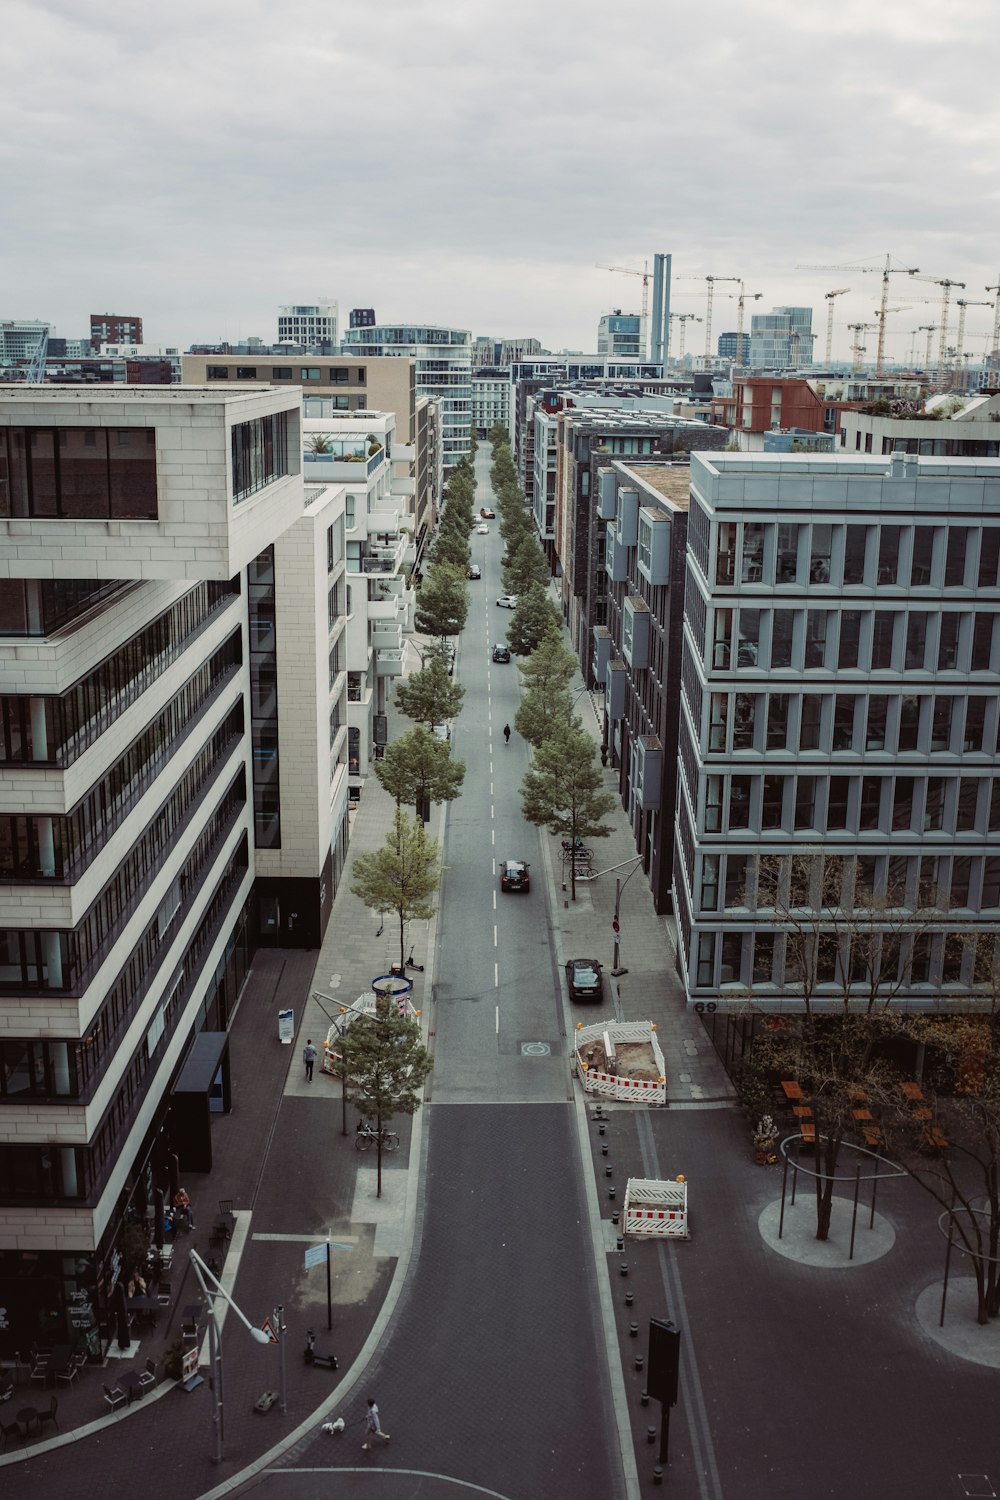 Una vista aérea de una calle de la ciudad con edificios altos